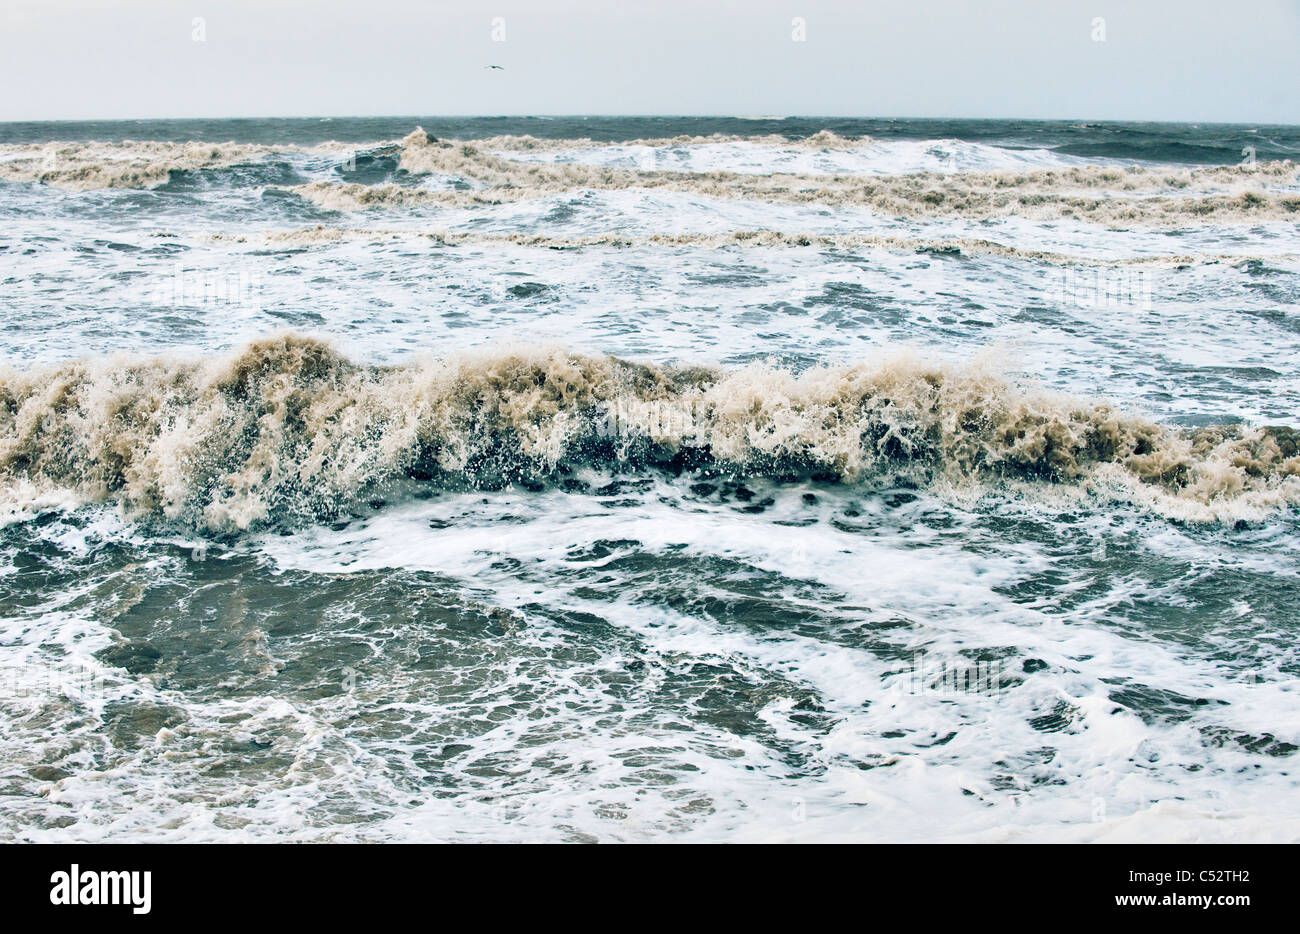 surface waves at sea Stock Photo